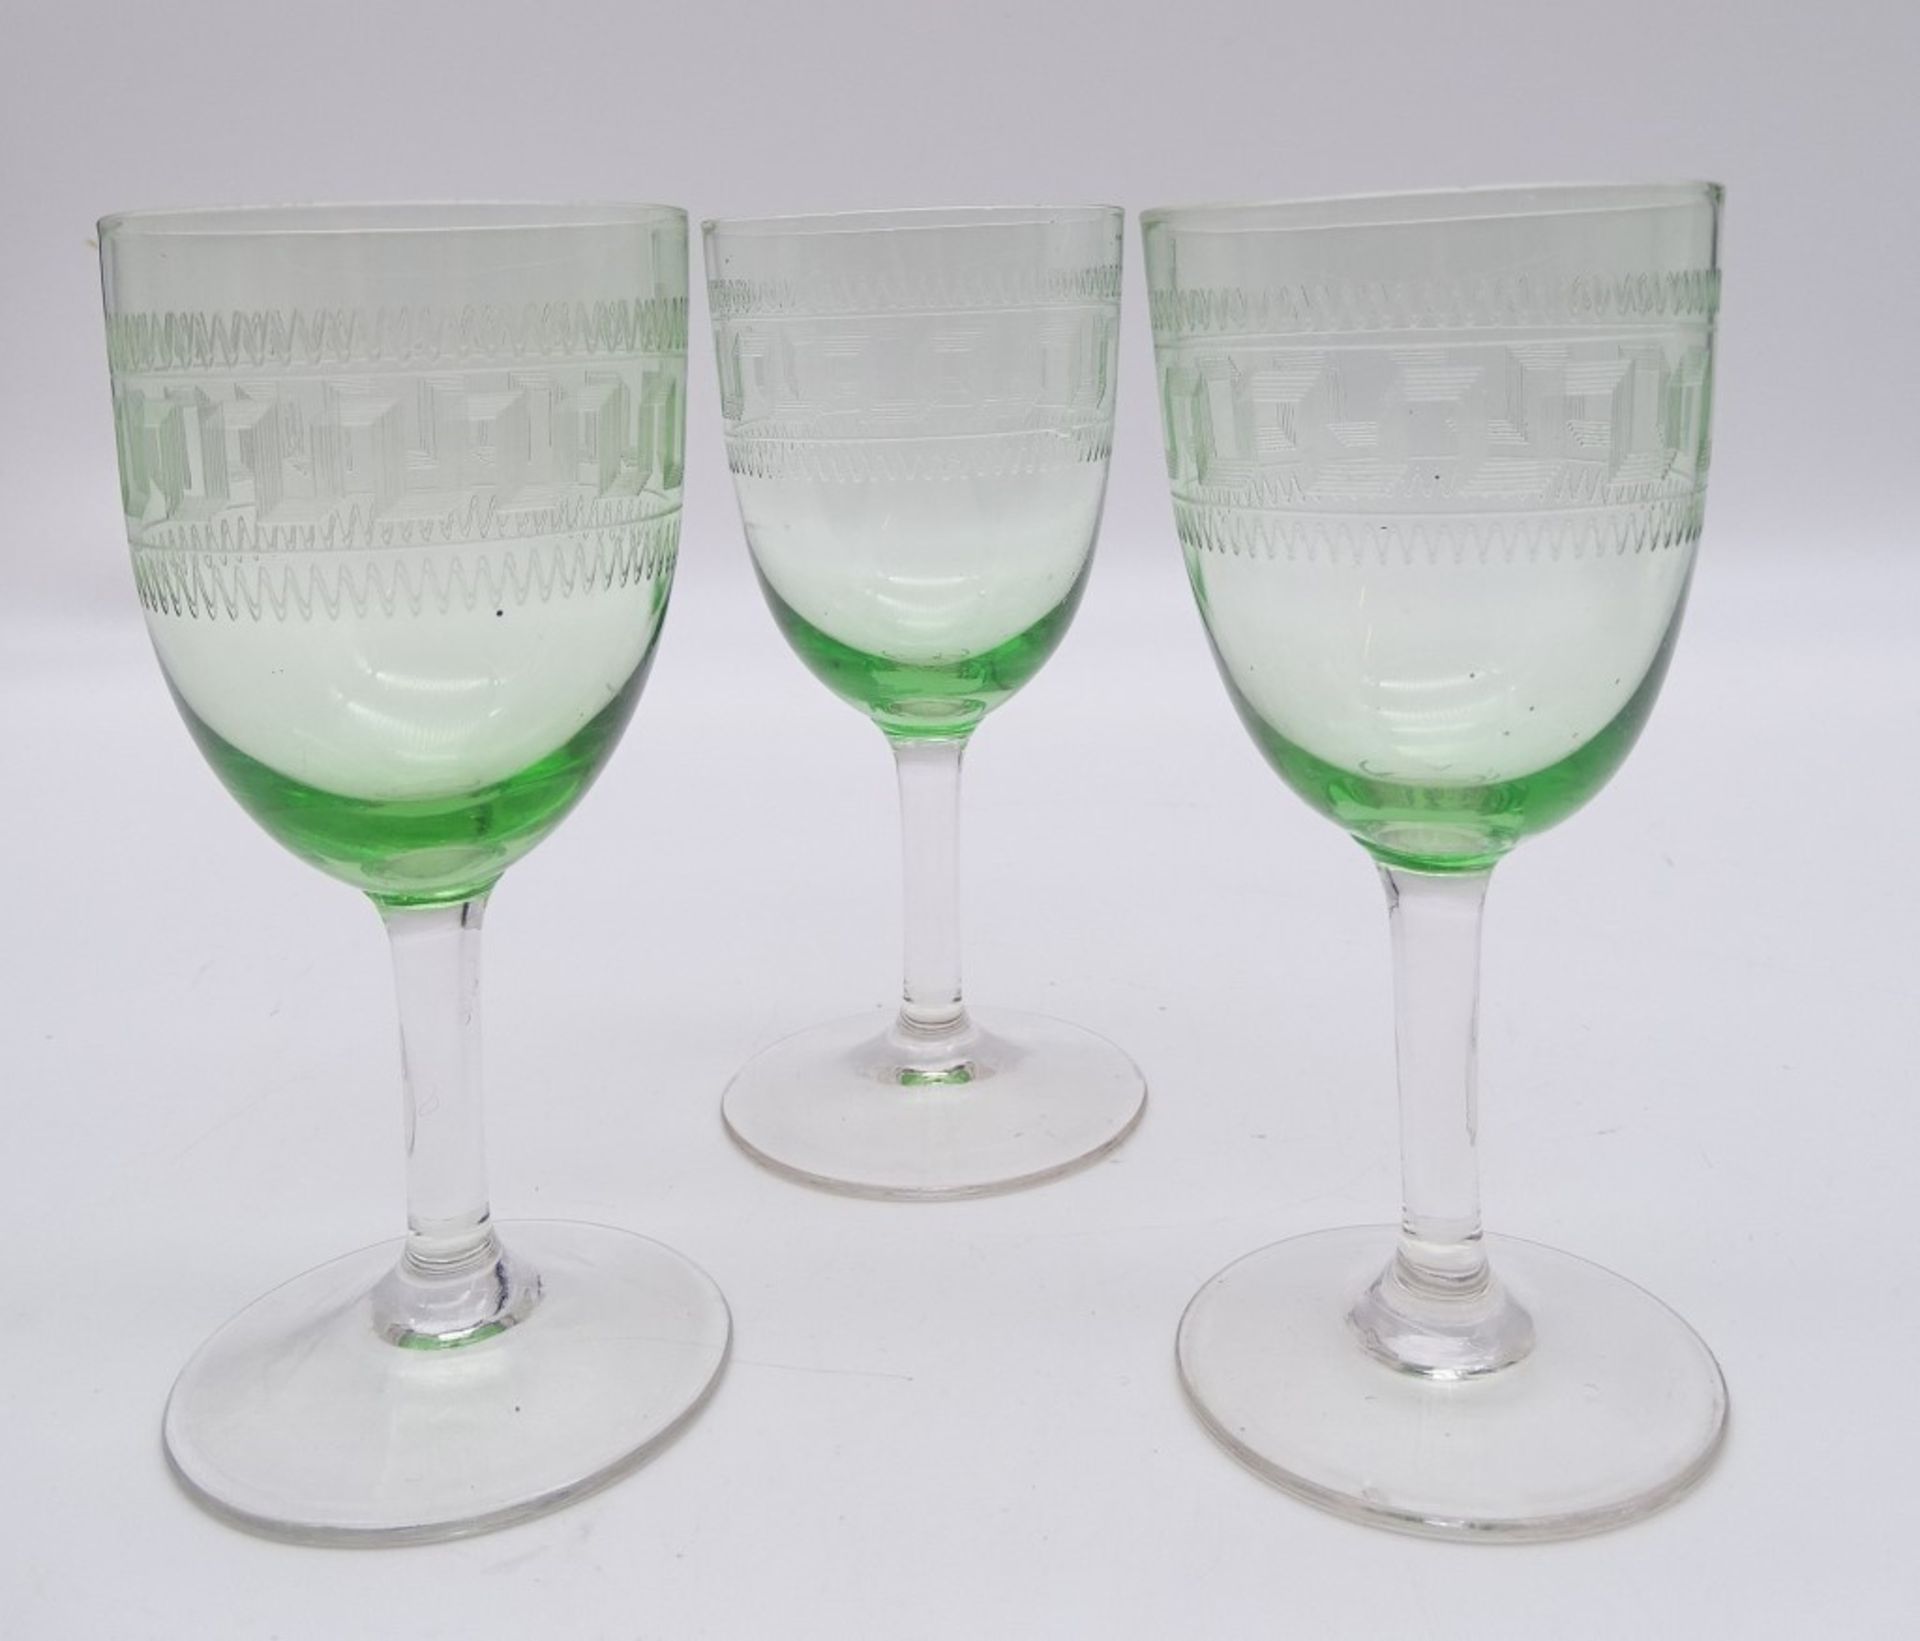 3 Stielgläser, Cuppa grün, geschliffenes Dekor, H. 13,3 cm - Bild 2 aus 5